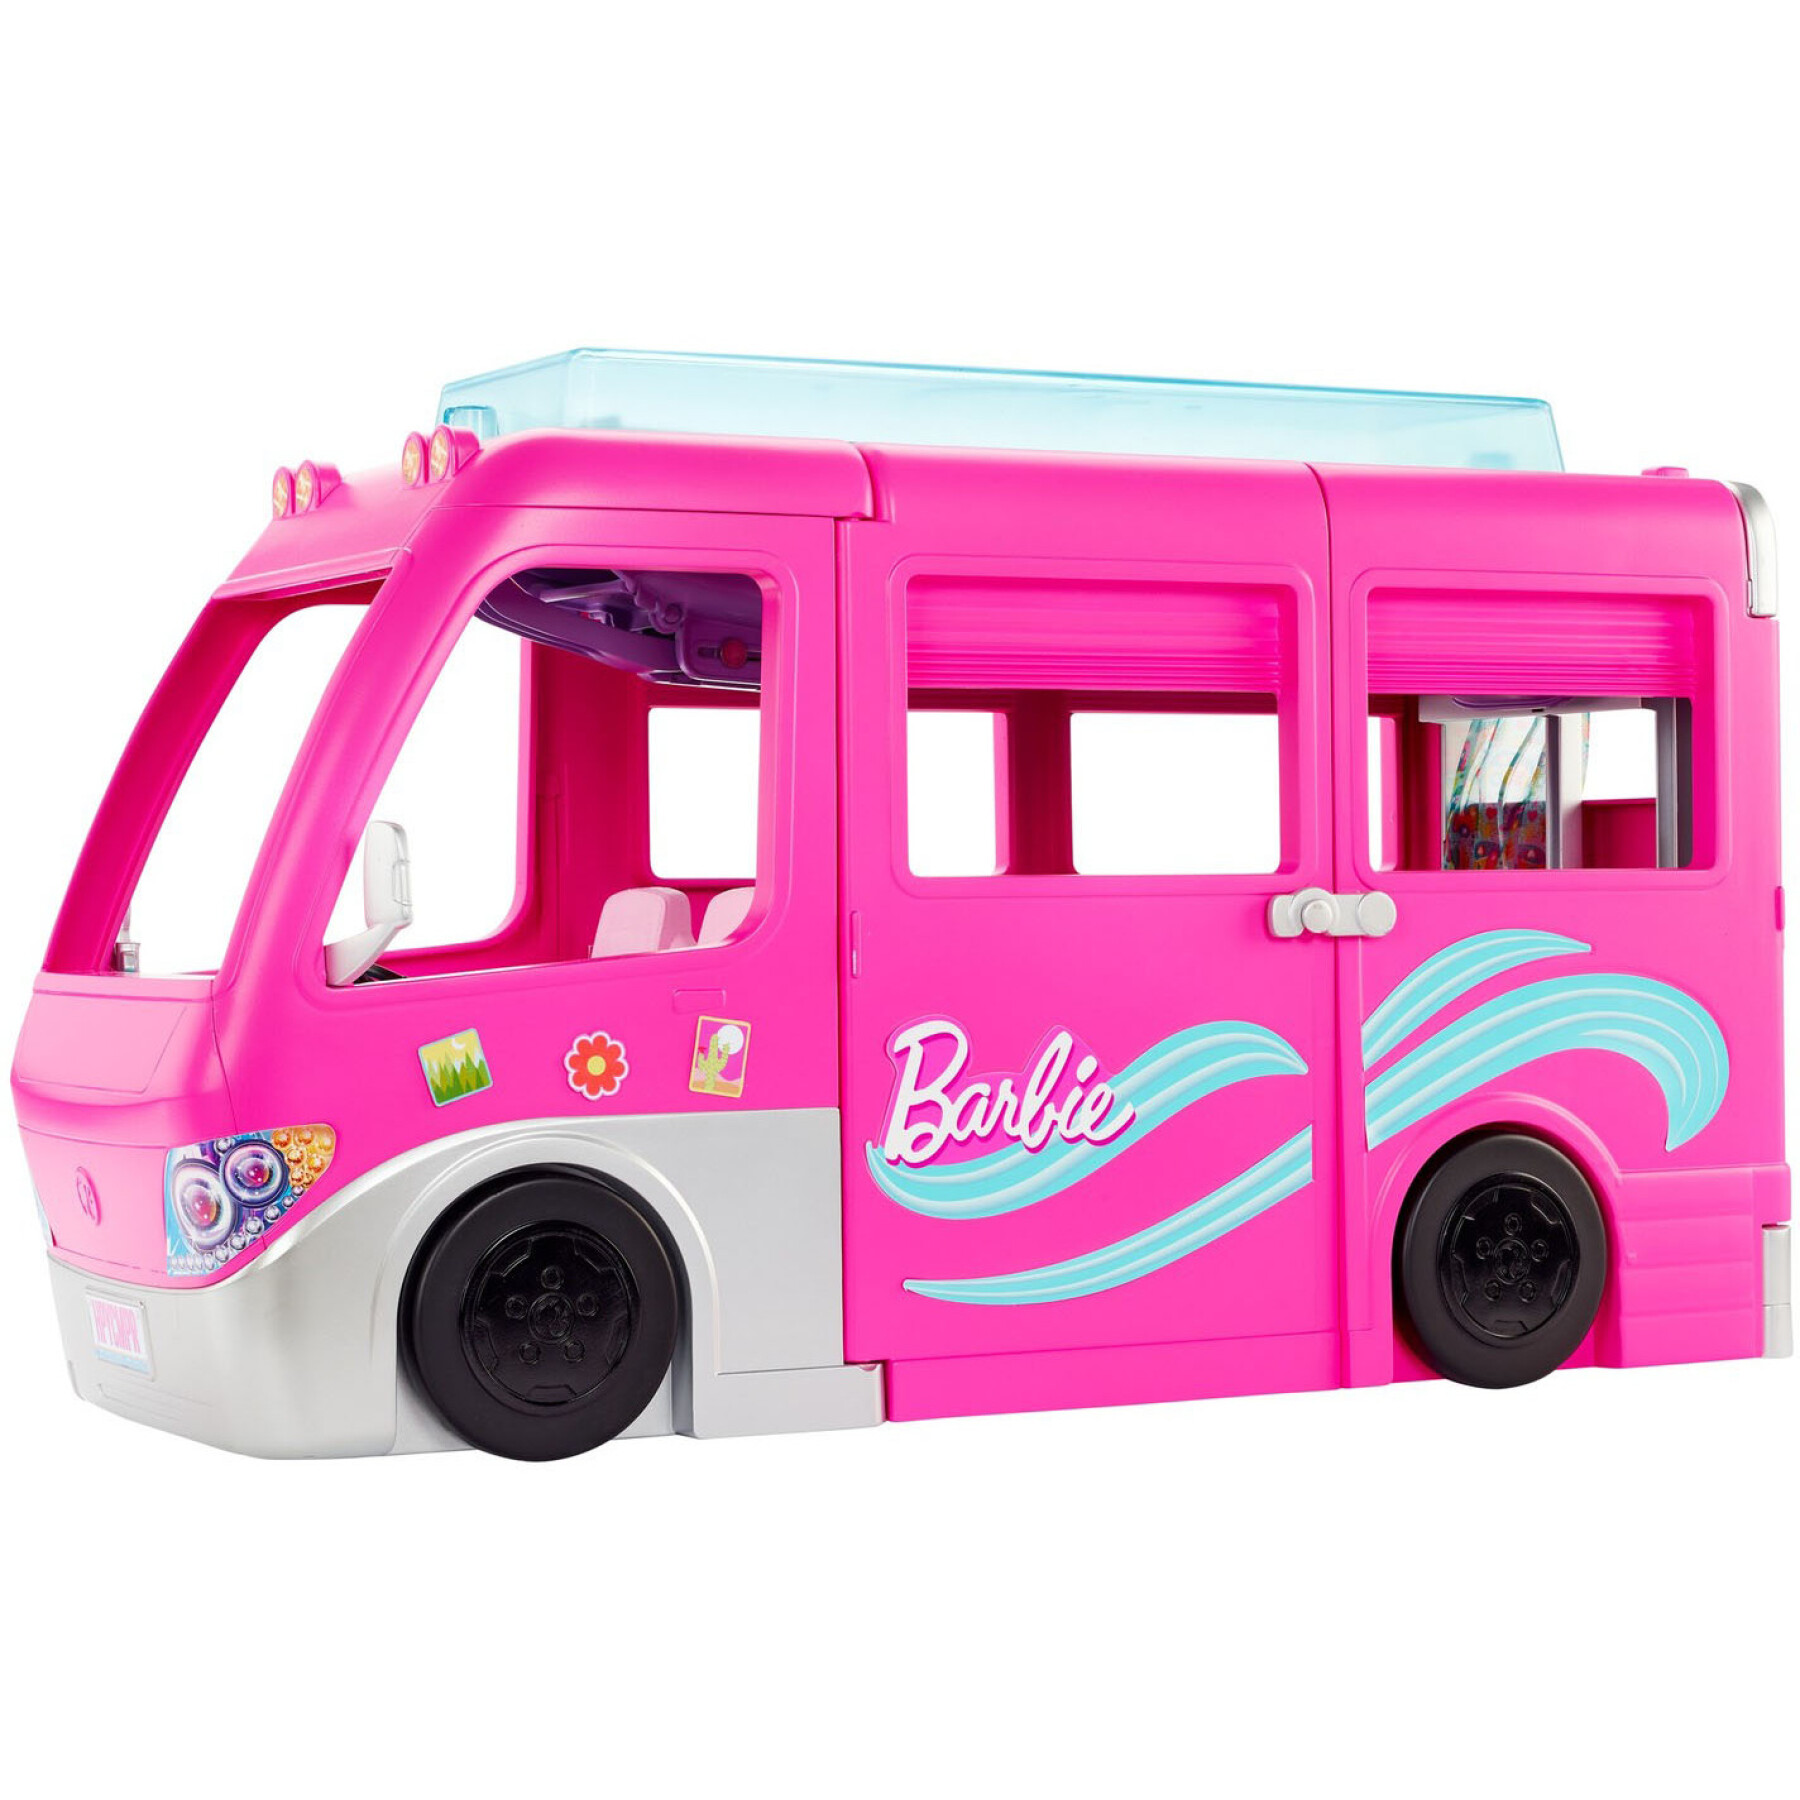 Boneca Barbie com carrinha de campismo descapotável Mattel France Mega